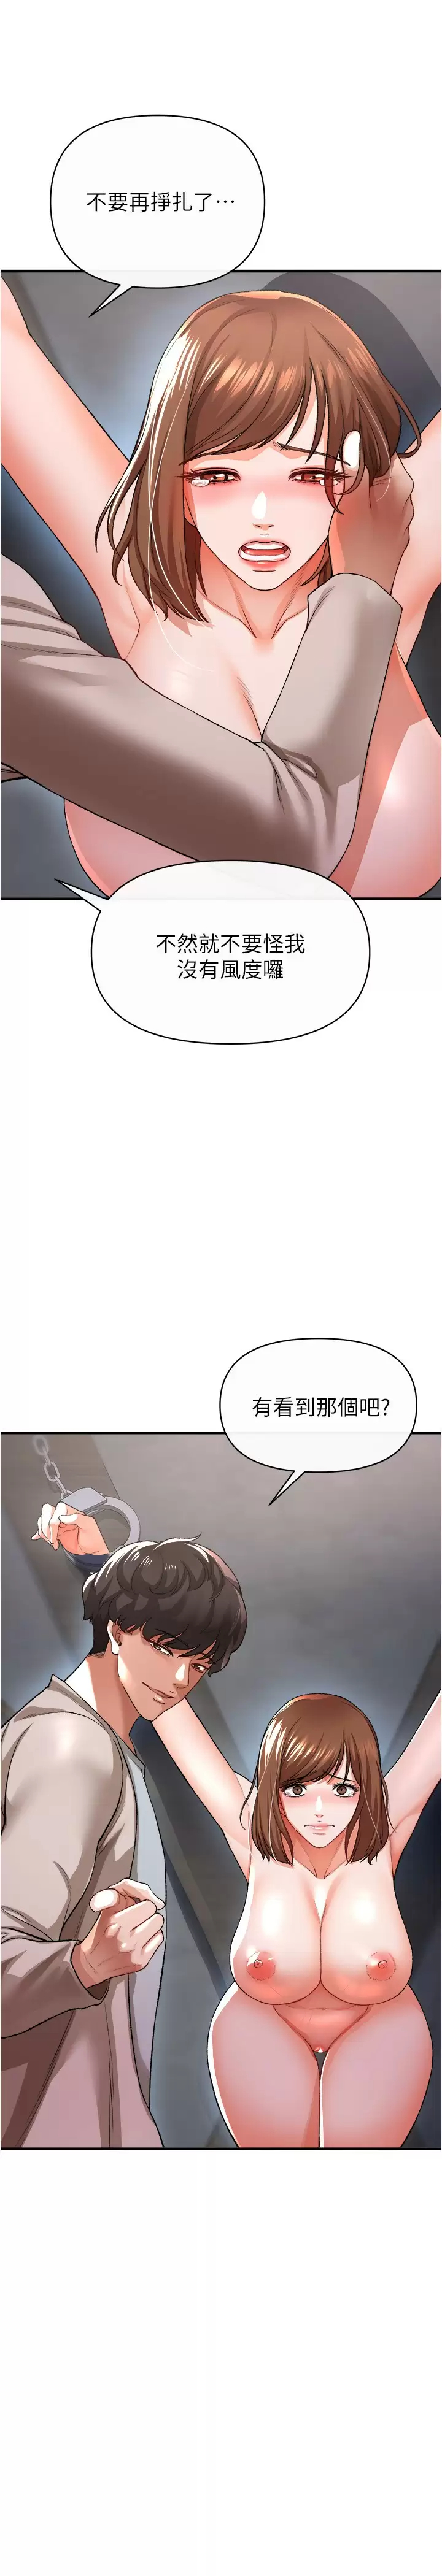 韩国污漫画 私刑刺客 第17话尽情抽送处女之身 9